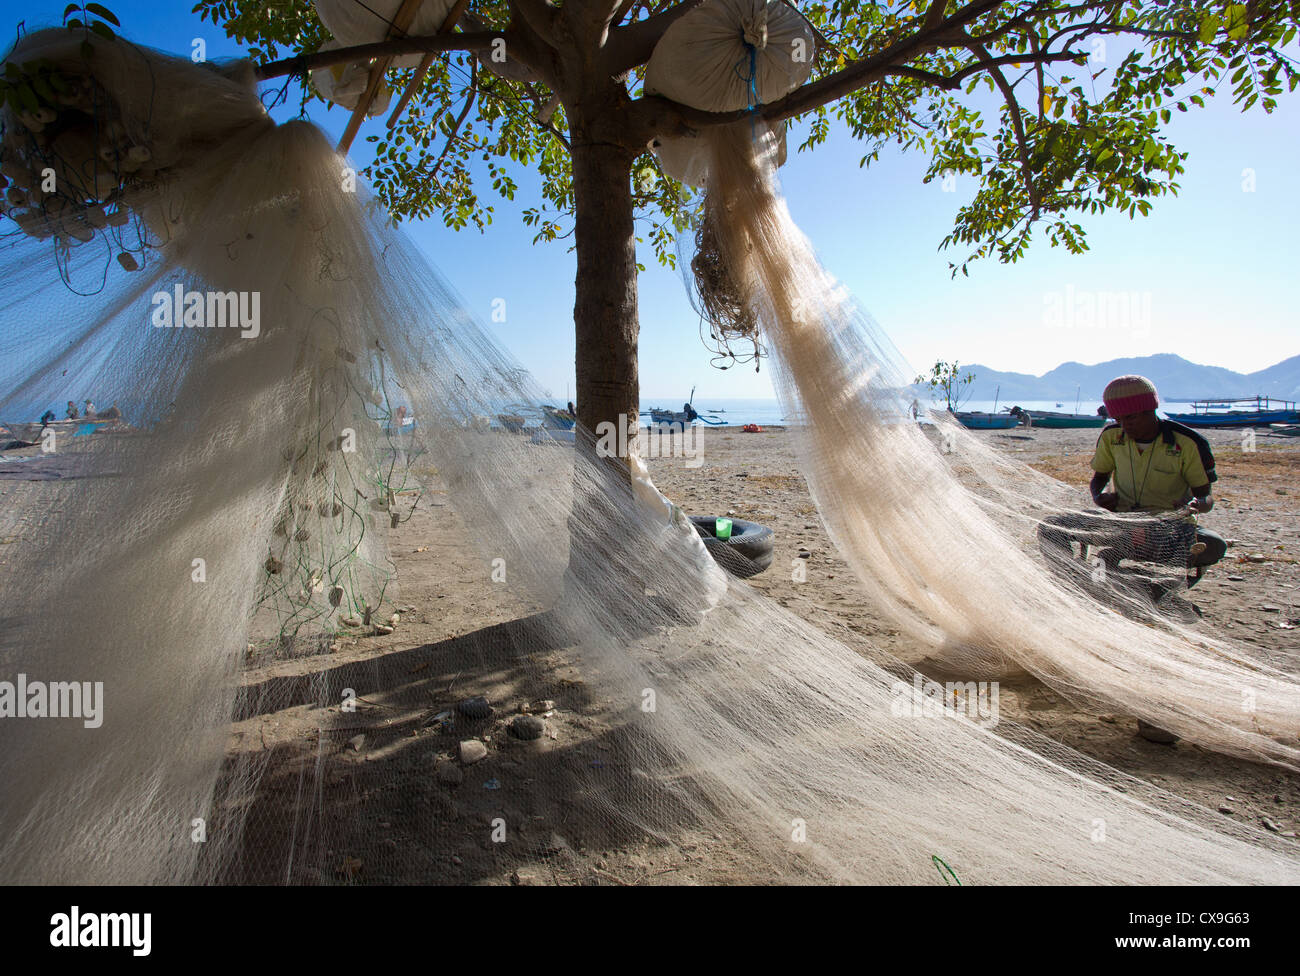 Hombre remendando sus redes en la playa, Dili, Timor Oriental Foto de stock